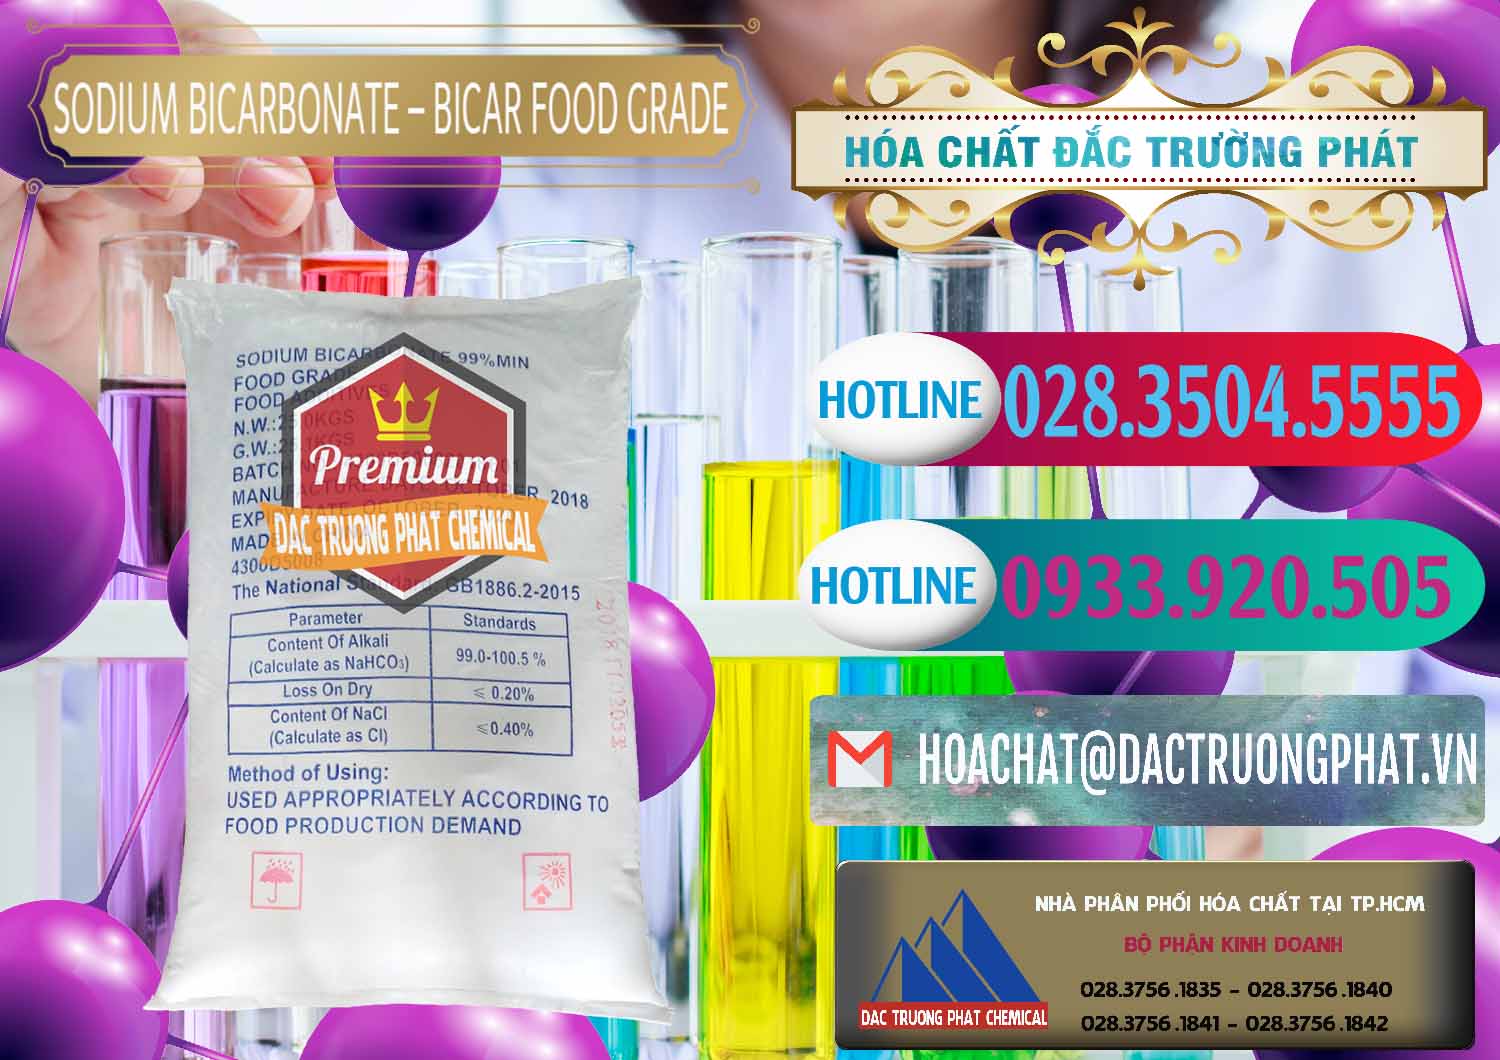 Cty kinh doanh _ bán Sodium Bicarbonate – Bicar NaHCO3 Food Grade Trung Quốc China - 0138 - Chuyên bán & phân phối hóa chất tại TP.HCM - truongphat.vn